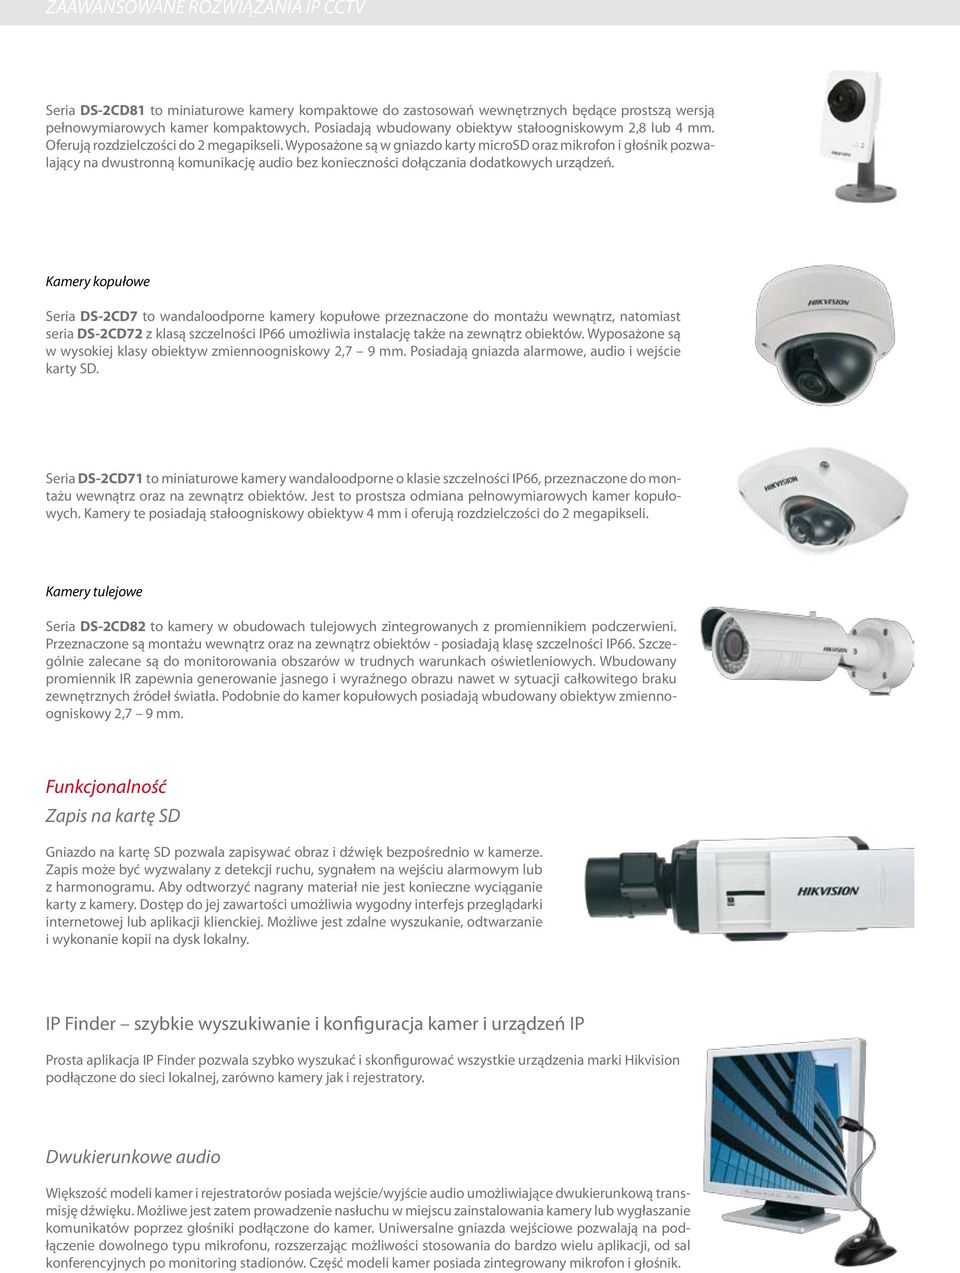 Kamery kopułowe Seria DS-2CD7 to wandaloodporne kamery kopułowe przeznaczone do montażu wewnątrz, natomiast seria DS-2CD72 z klasą szczelności IP66 umożliwia instalację także na zewnątrz obiektów.